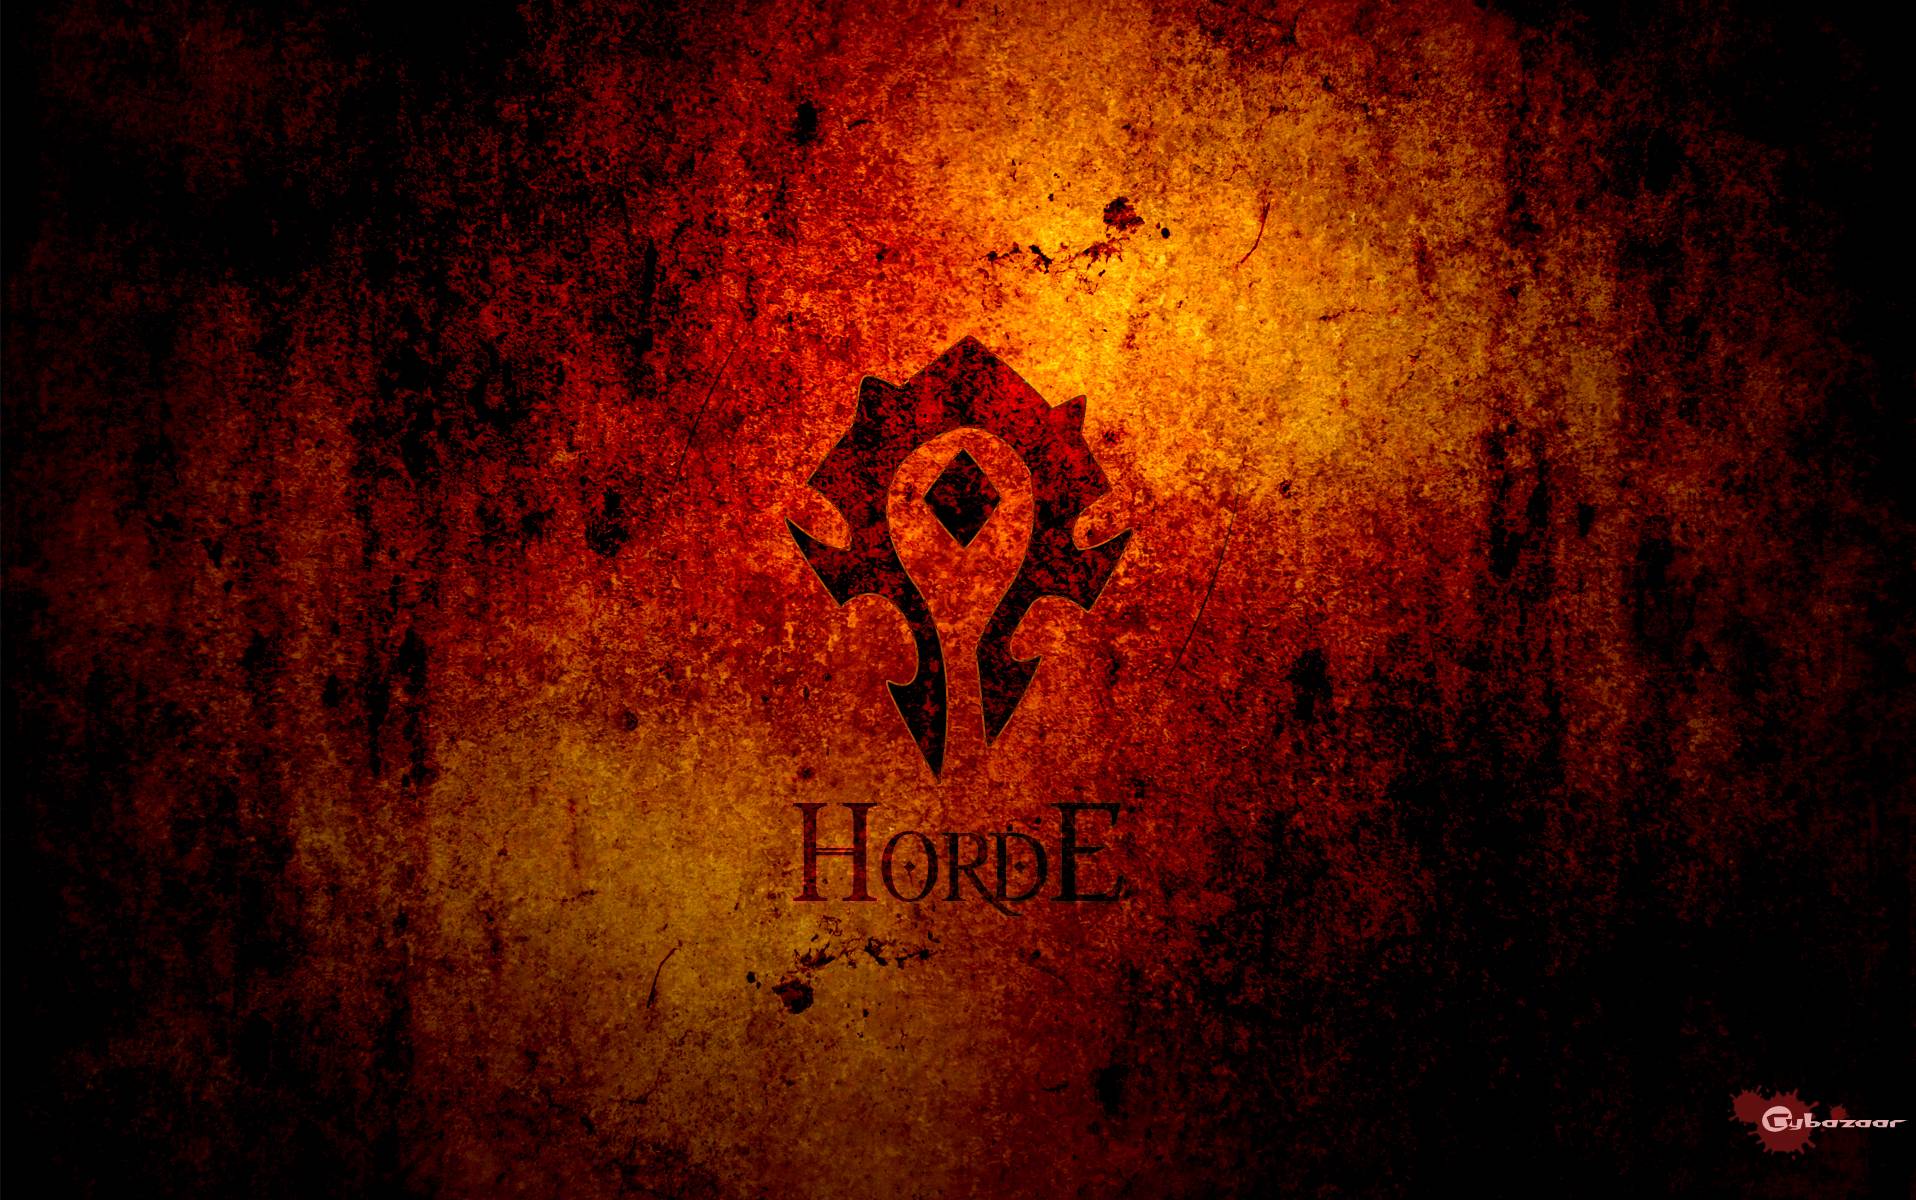 World of Warcraft Horde Wallpaper Free World of Warcraft Horde Background